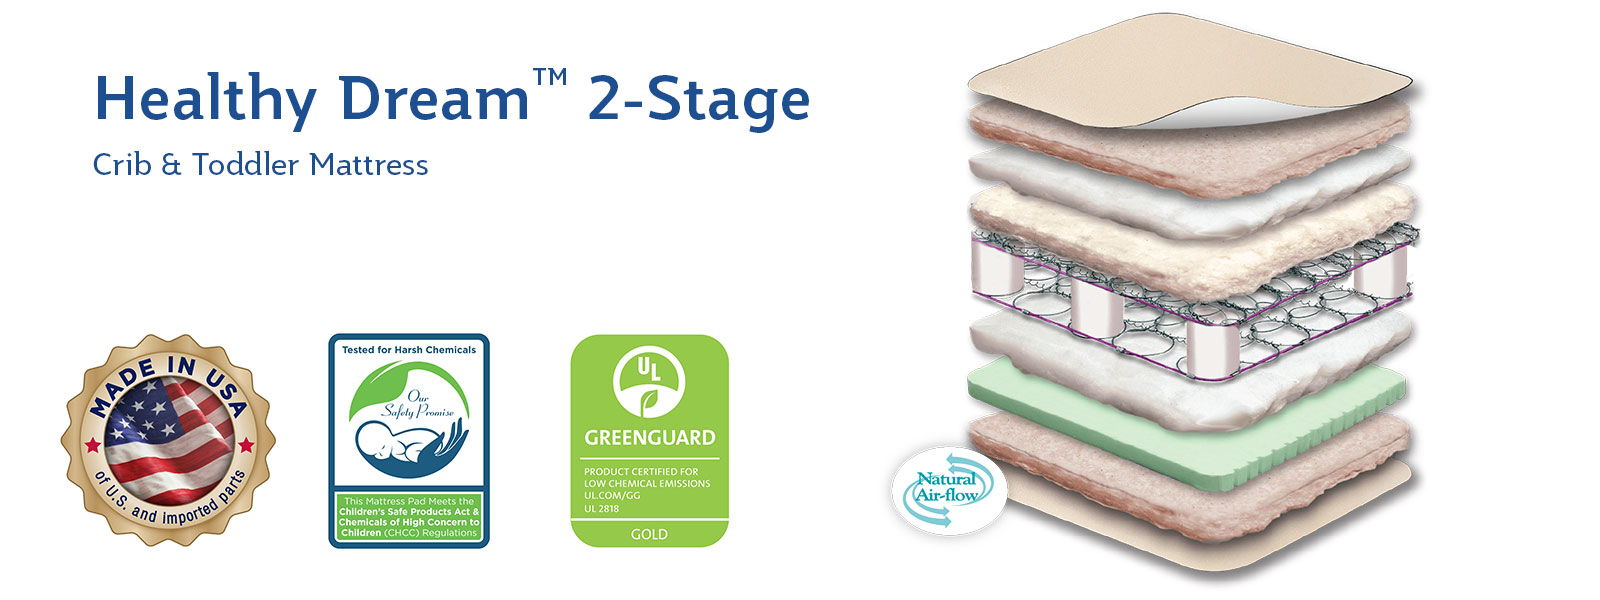 sealy healthy dream 2 stage hybrid crib mattress